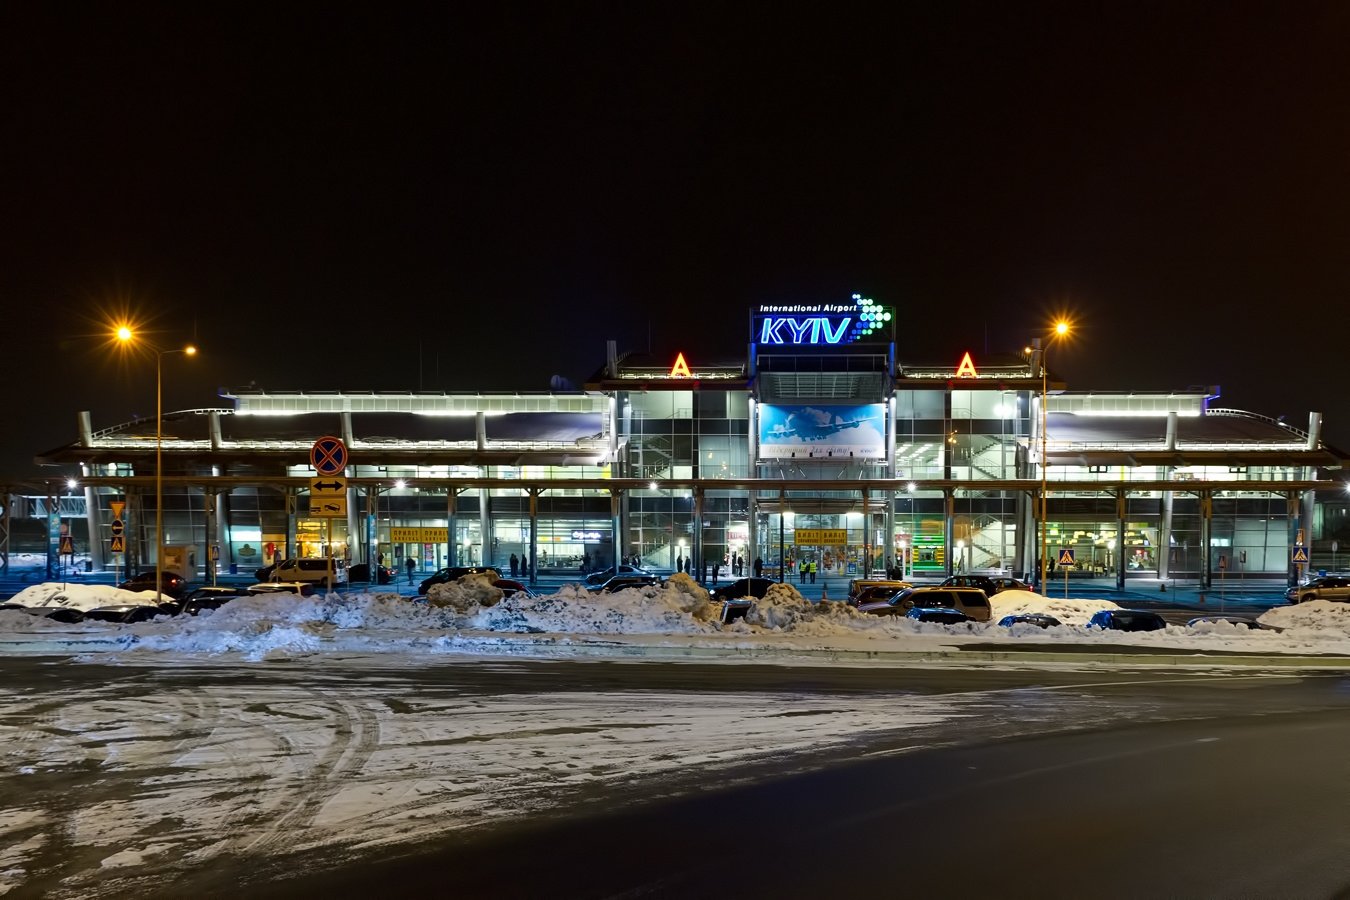 Аэропорт «Киев-Жуляны»: история появления и информация о работе, - ФОТО